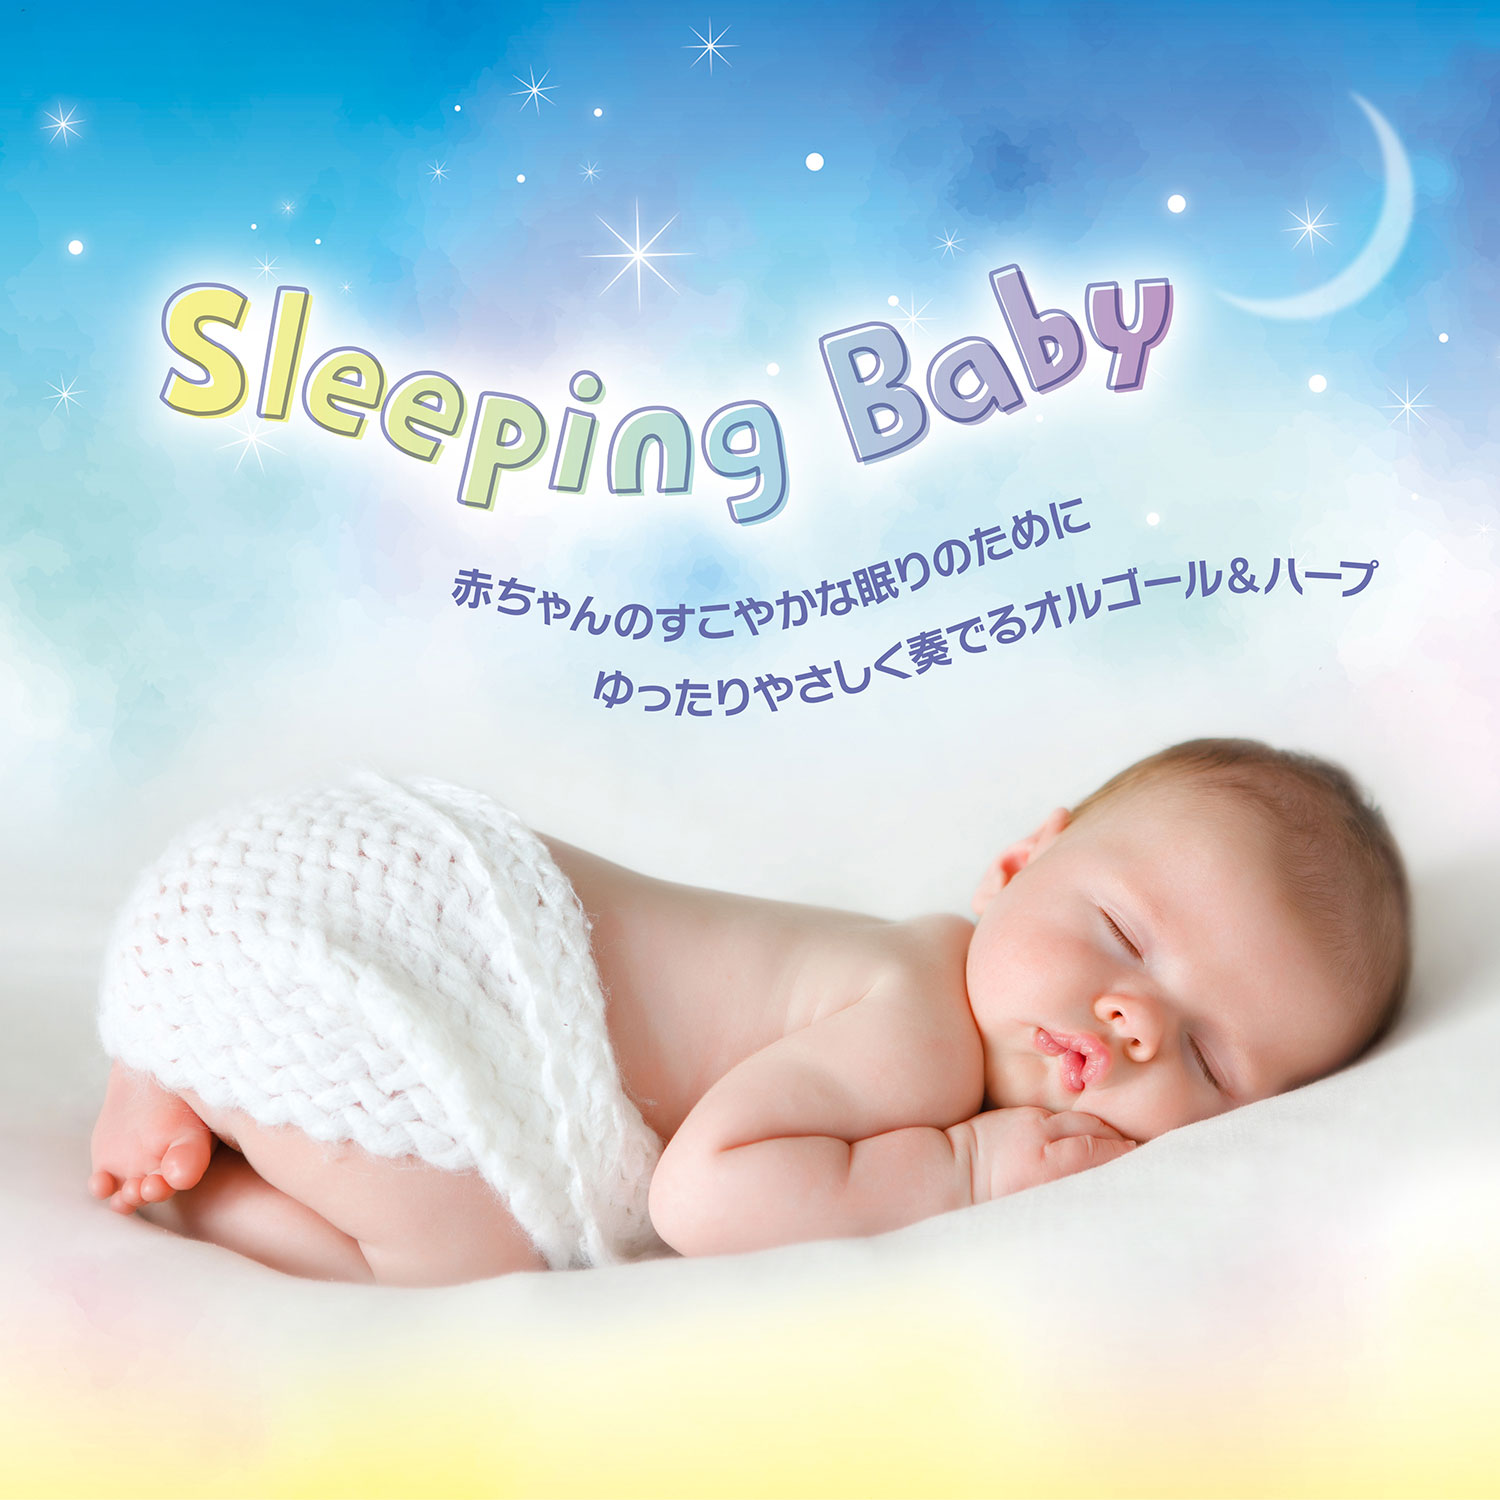 スリーピング・ベイビー～赤ちゃんのすこやかな眠りのために ゆったりやさしく奏でるオルゴール＆ハープ